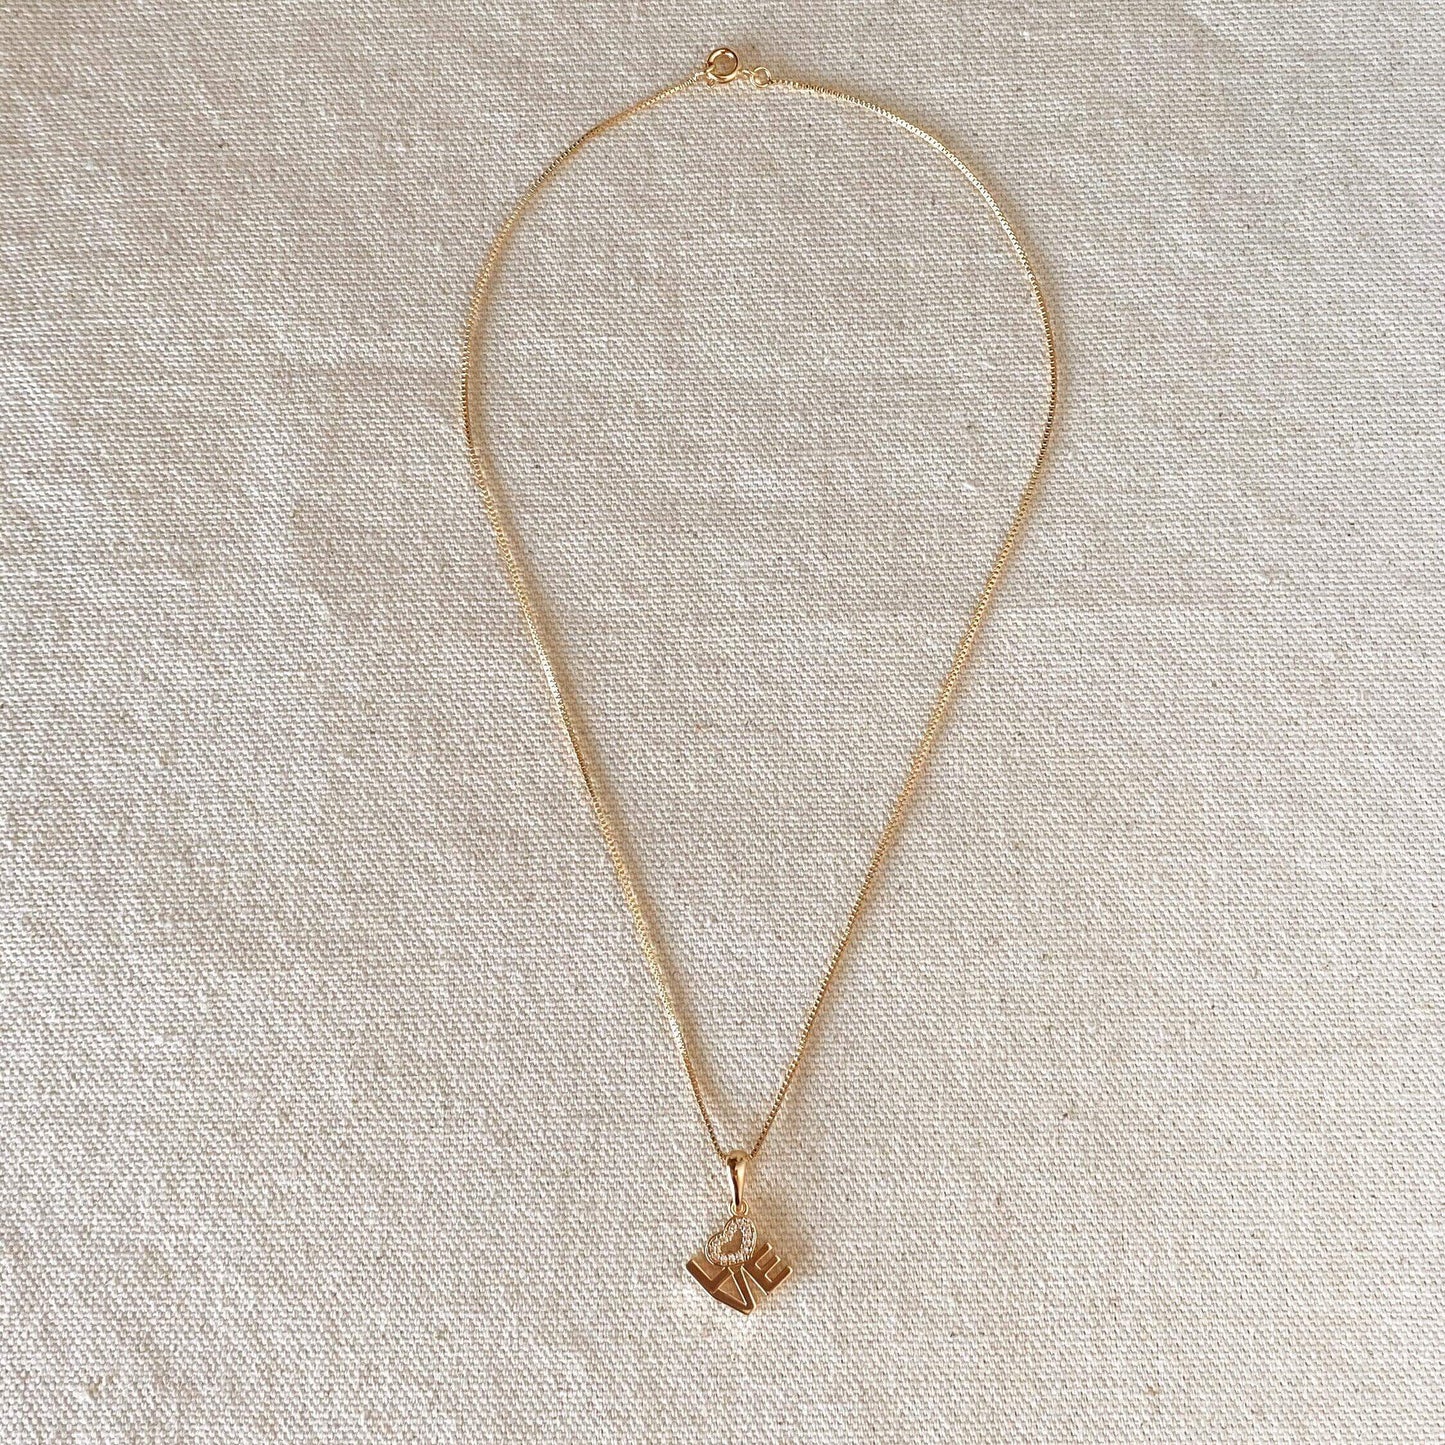 GoldFi 18K Gold Filled Love Letter Stack Necklace